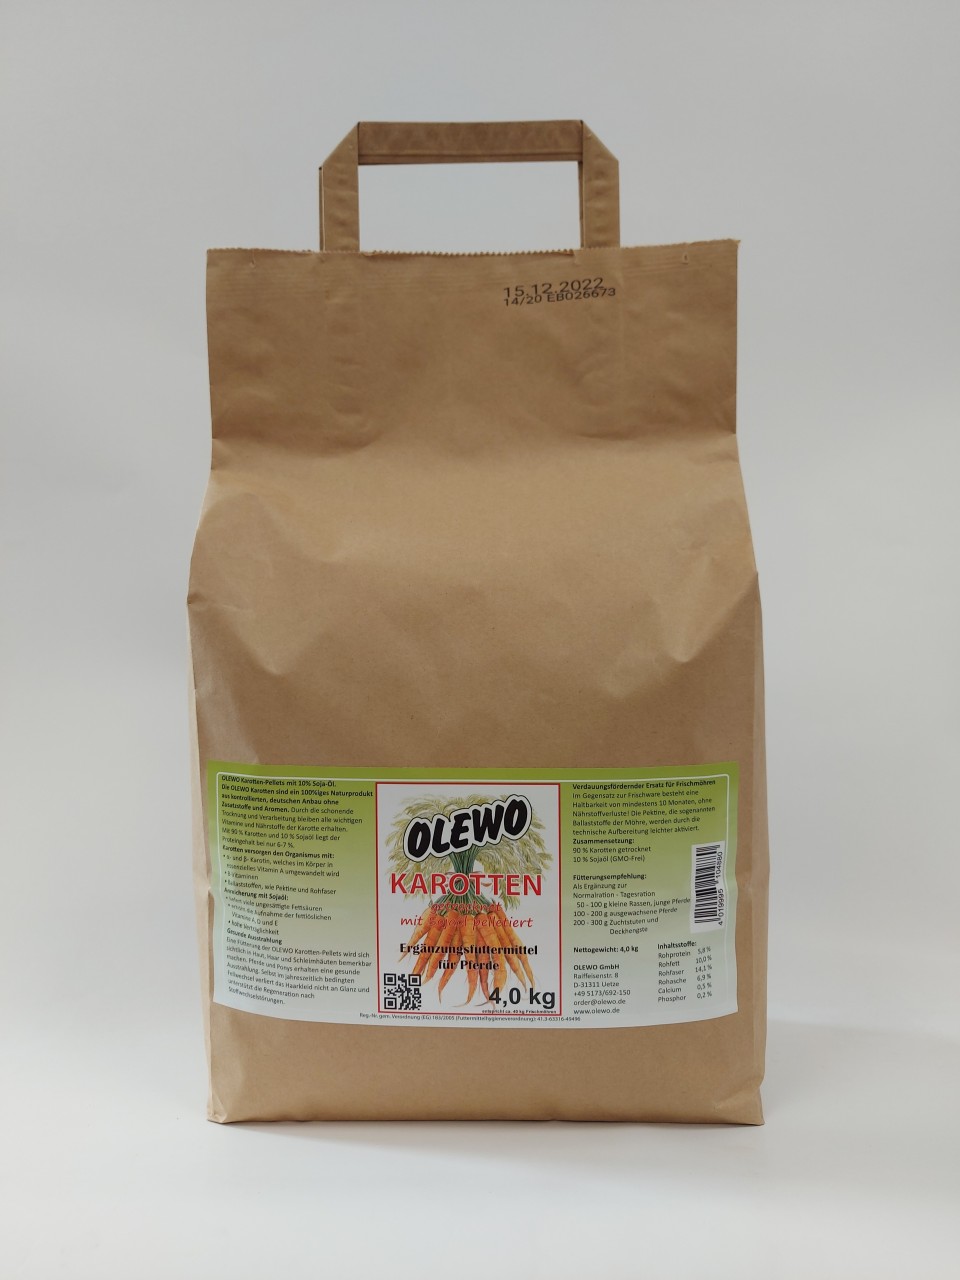 OLEWO Karotten-Pellets mit Öl für Pferde - 4,0 kg